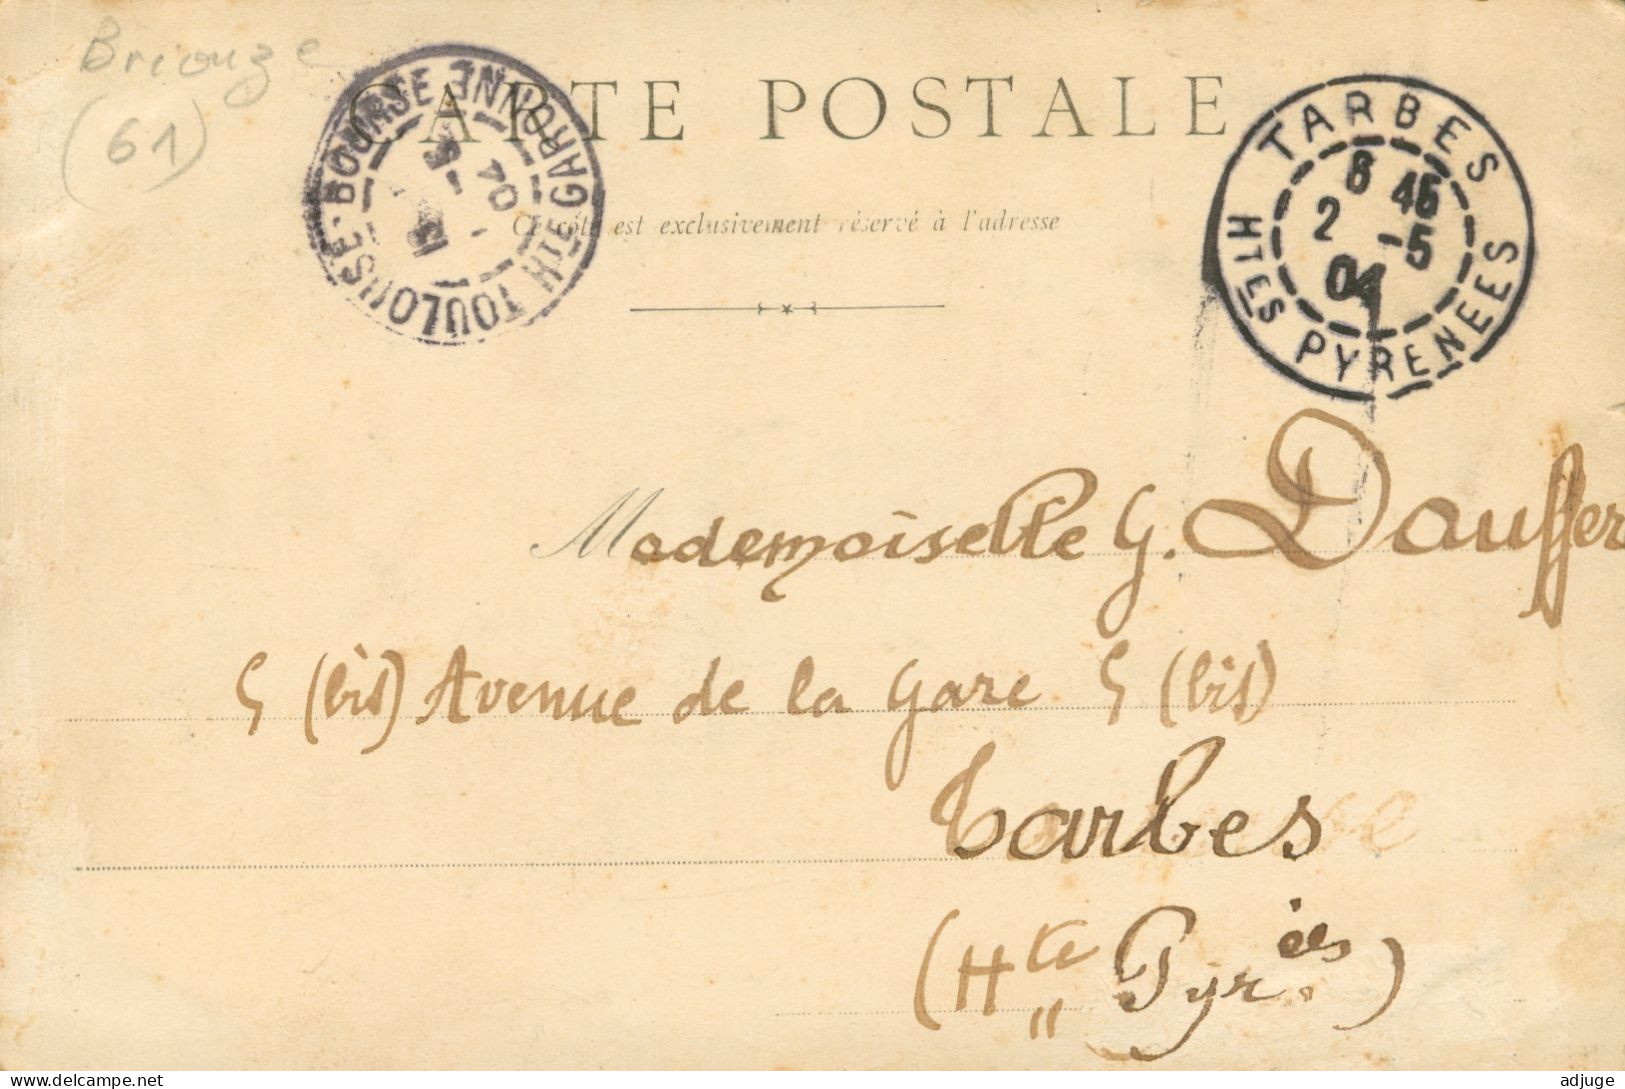 CPA-61-Briouze - Château De LIGNON - Phot. D & M _ 1904- Pionnière  *  2 Scans - Briouze